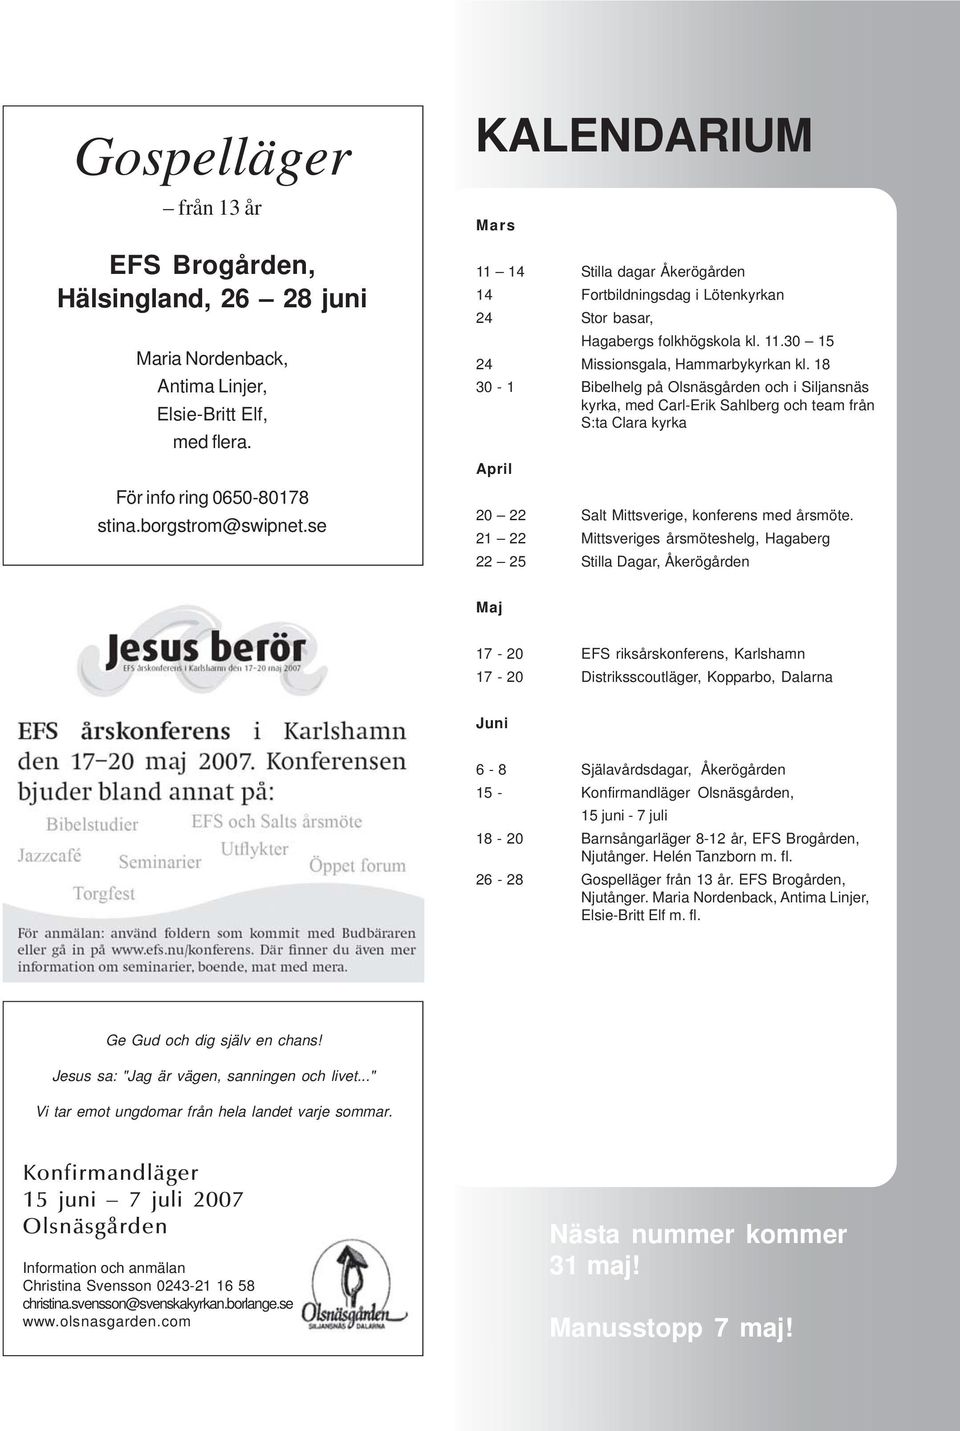 18 30-1 Bibelhelg på Olsnäsgården och i Siljansnäs kyrka, med Carl-Erik Sahlberg och team från S:ta Clara kyrka April 20 22 Salt Mittsverige, konferens med årsmöte.